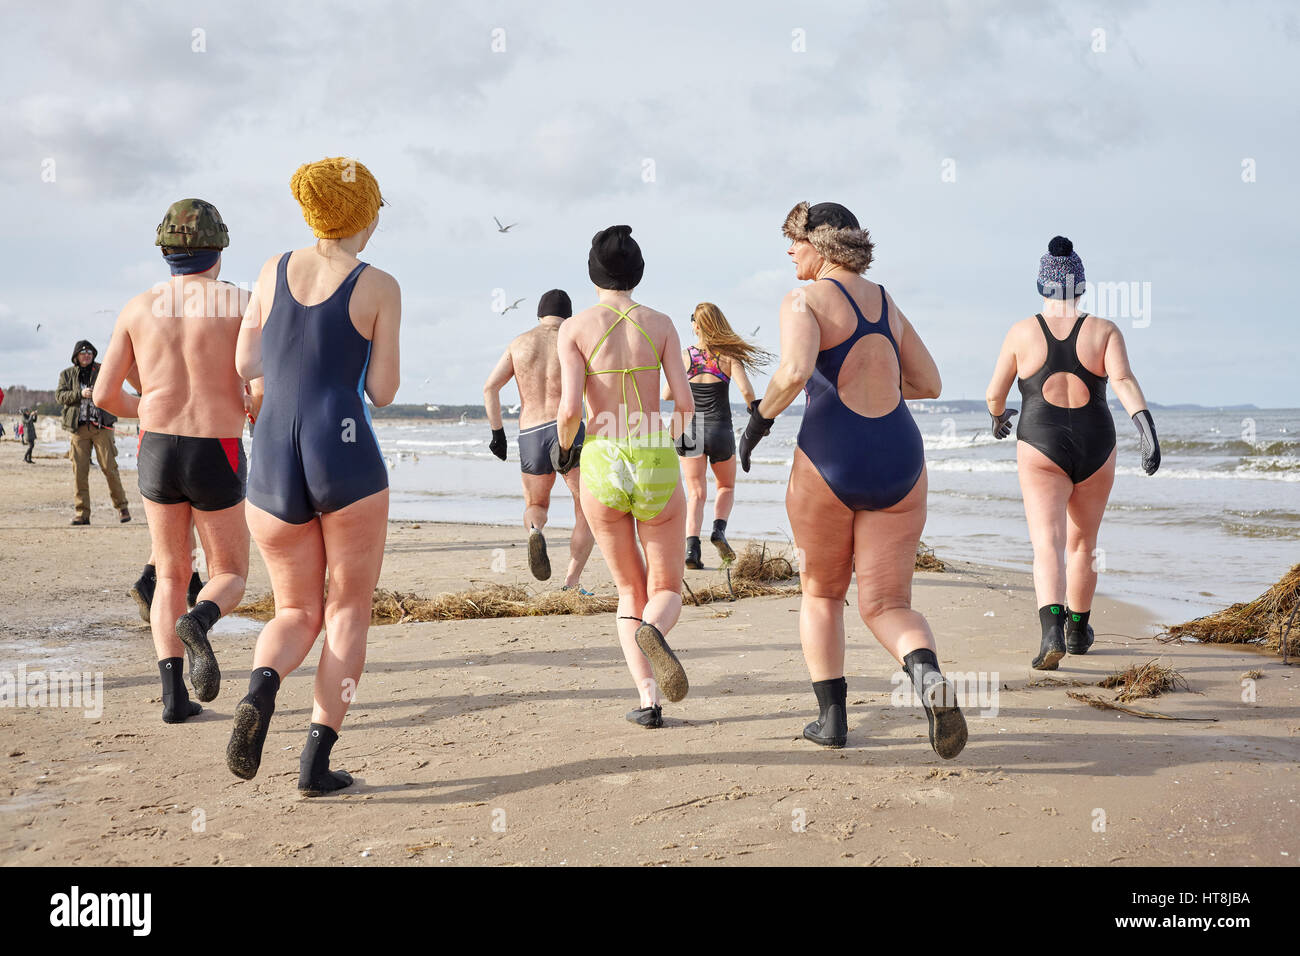 Swinoujscie, Pologne - 25 Février 2017 : Fans de la natation hivernale courir pour se réchauffer sur la plage. La natation hivernale contribue à l'amélioration de bien-être. Banque D'Images